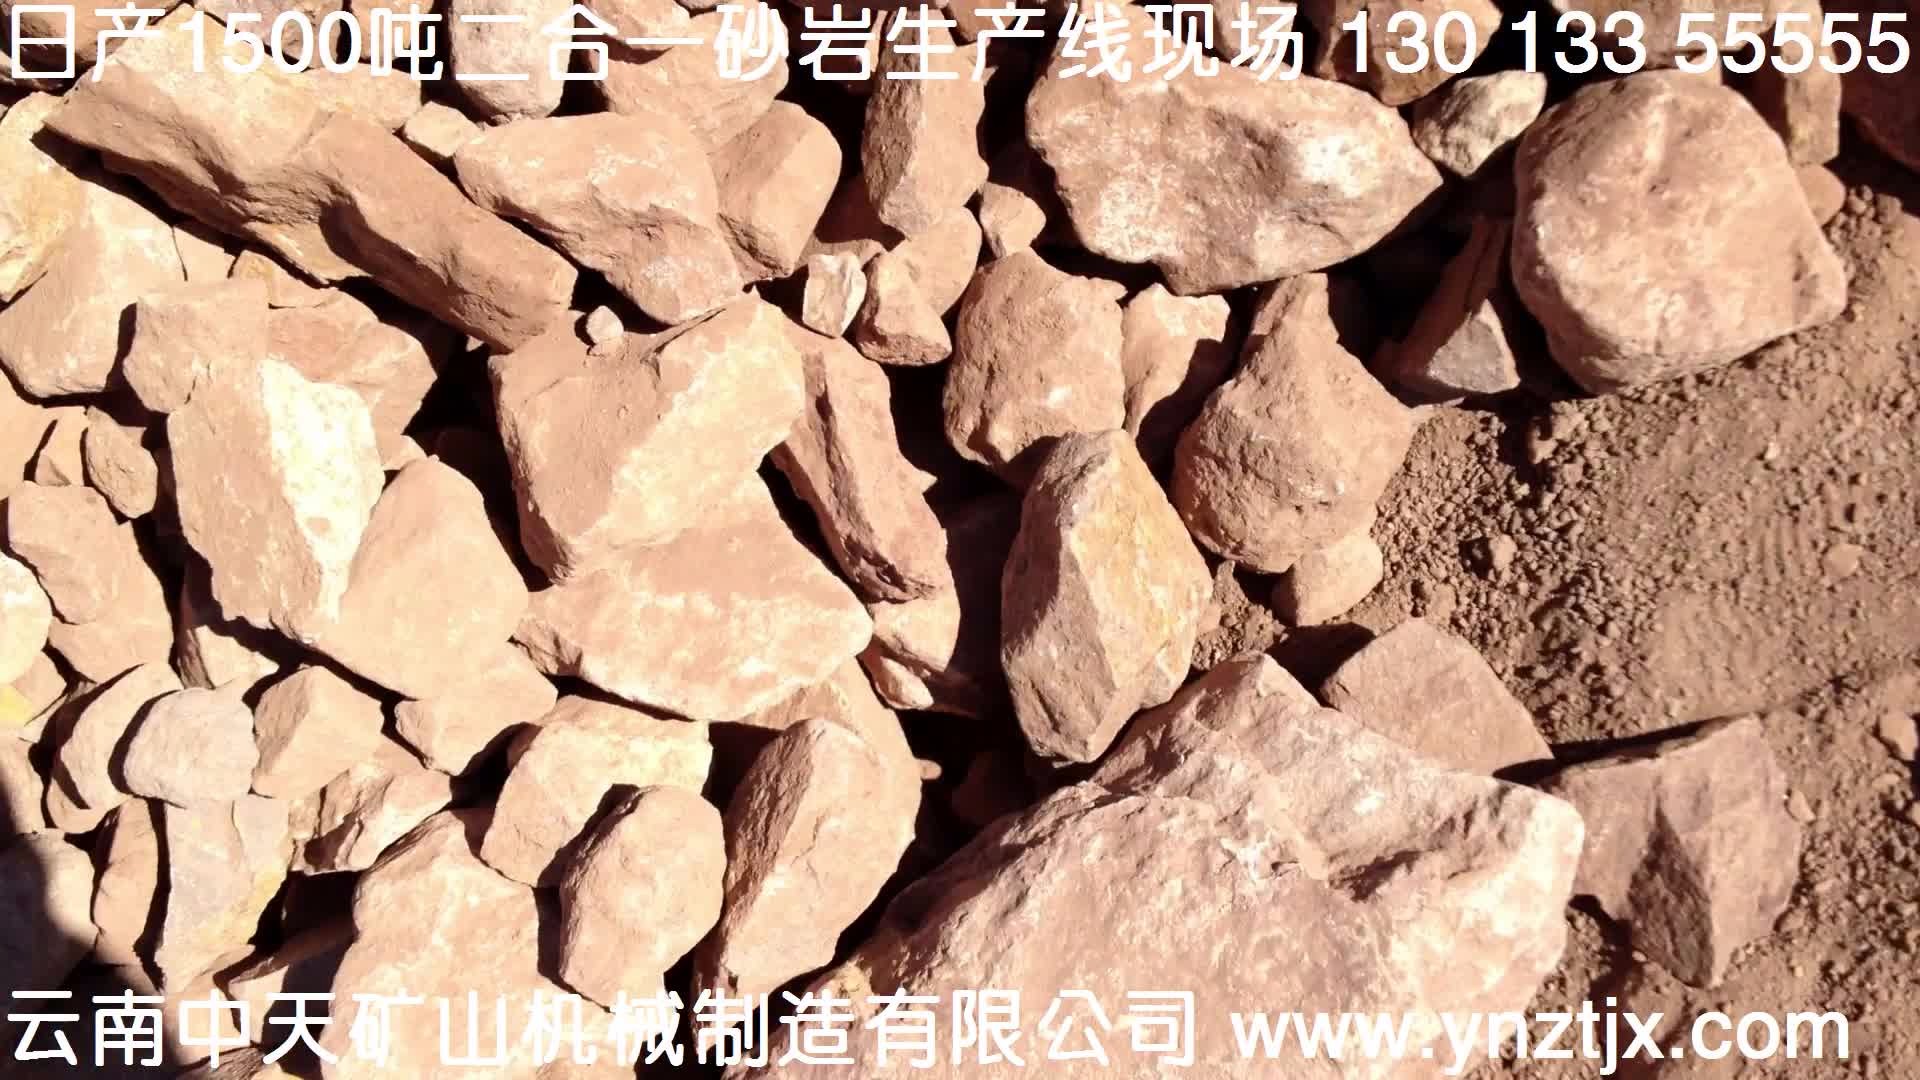 云南日产1500吨砂岩二合一生产线现场视频一